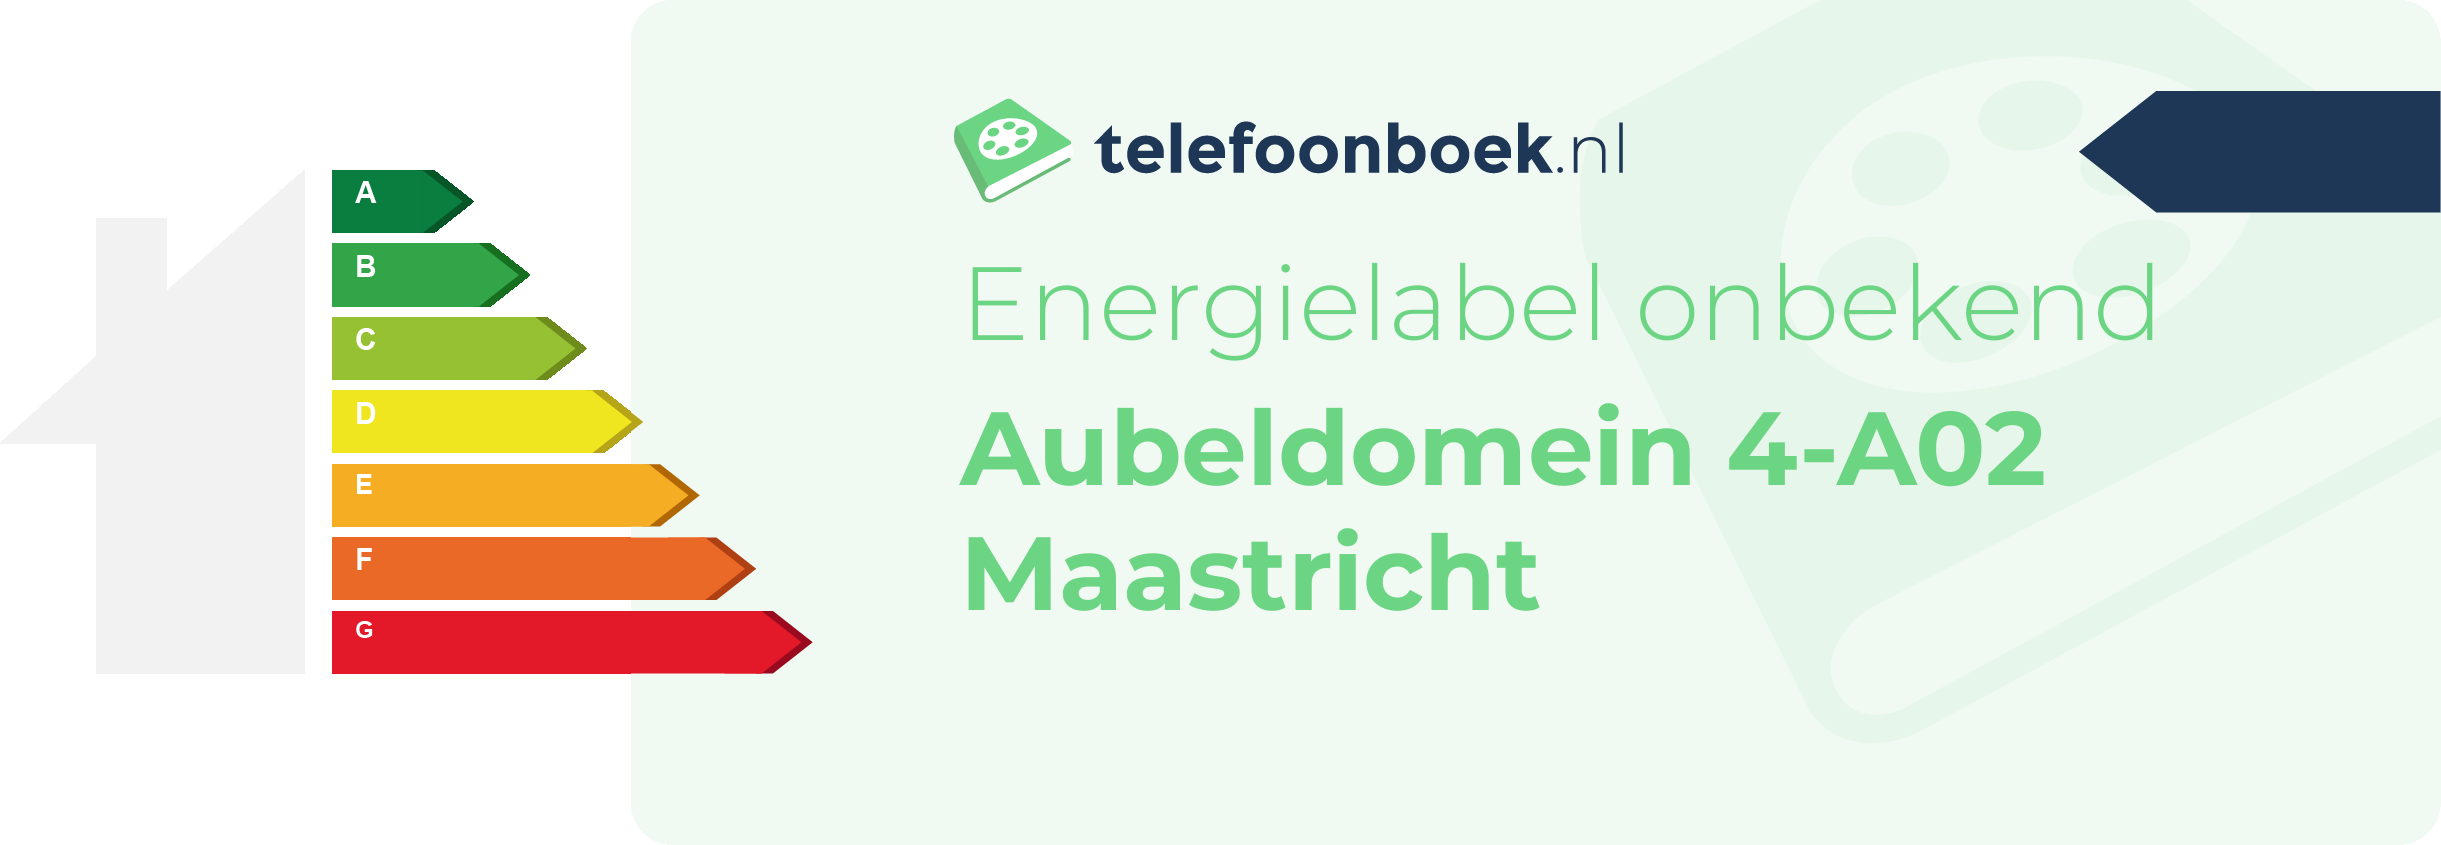 Energielabel Aubeldomein 4-A02 Maastricht